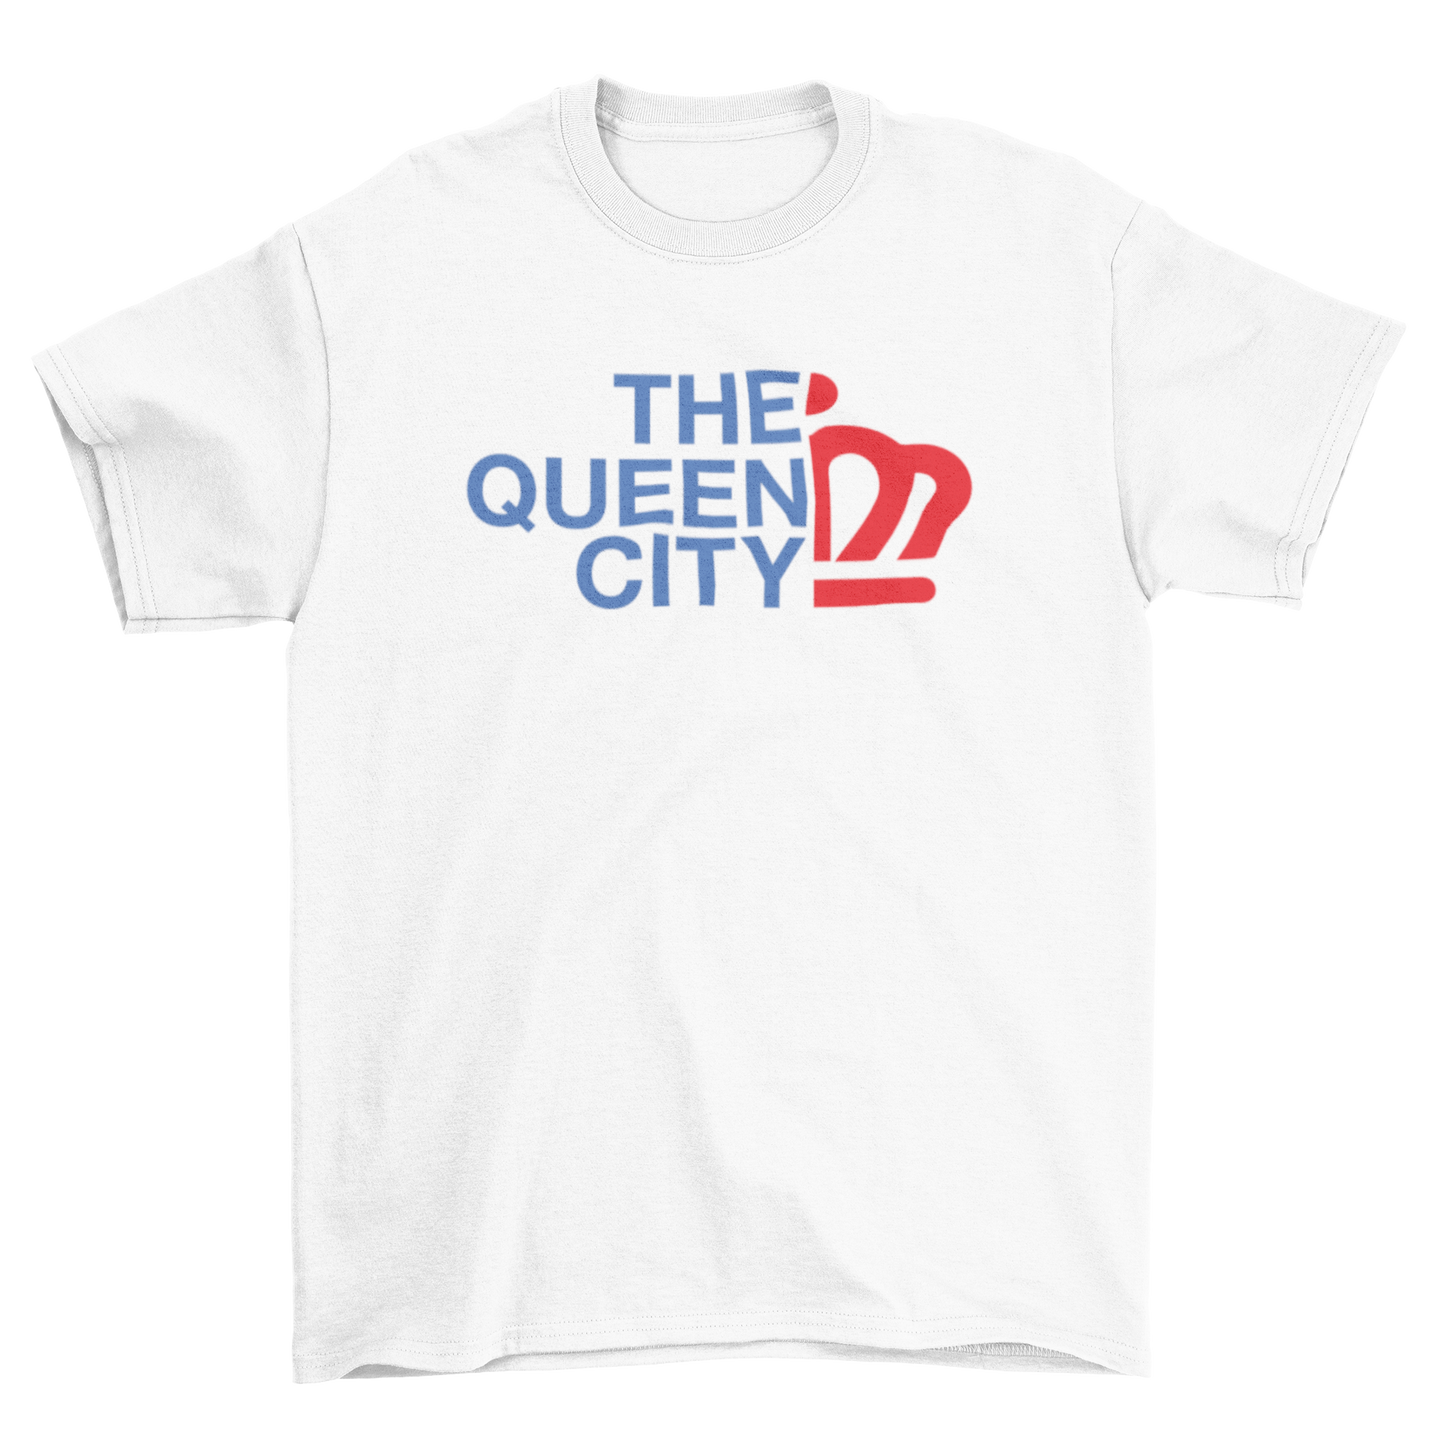 The Queen City Tee